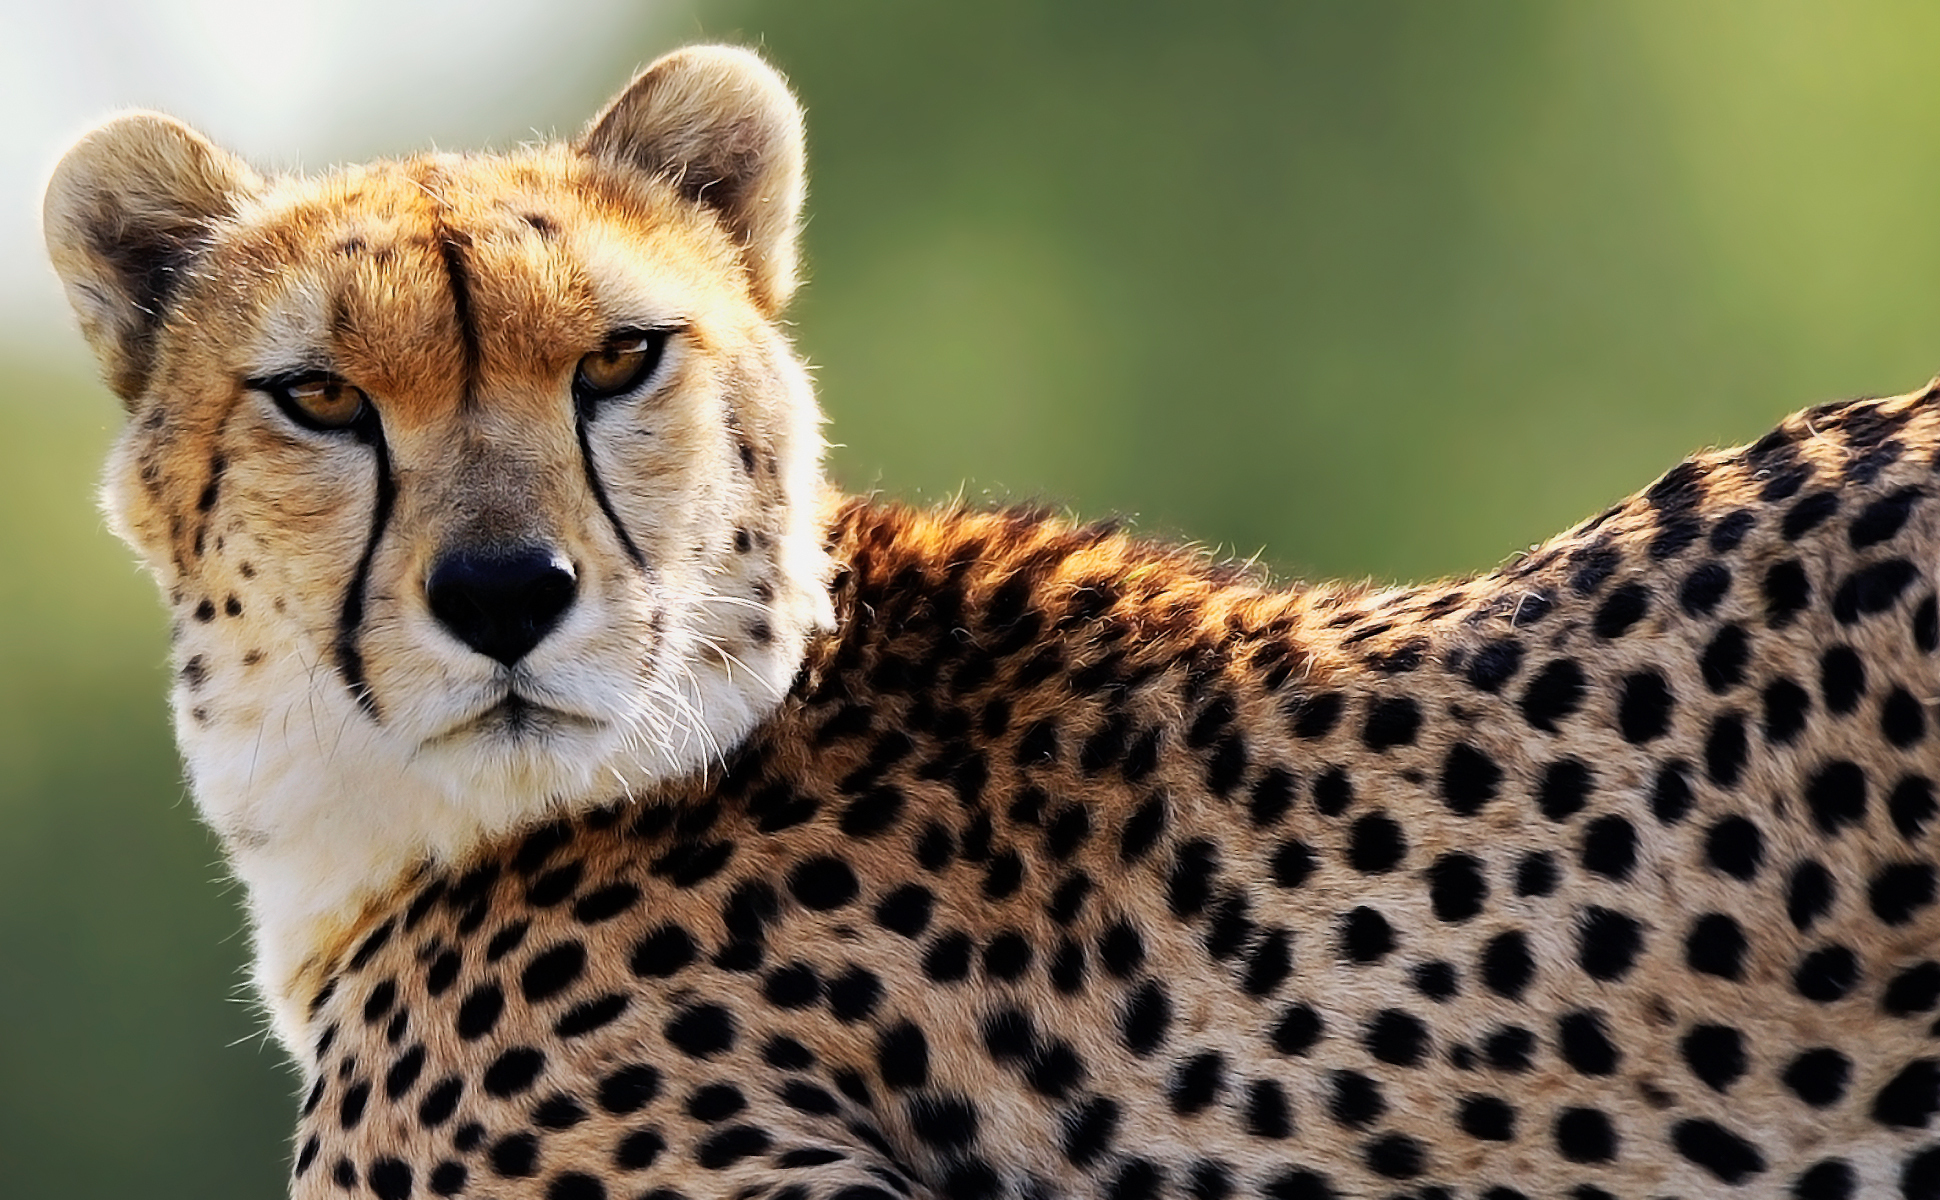 Bakgrunnsbilder gepard Store kattedyr Dyr 1940x1200 Geparder